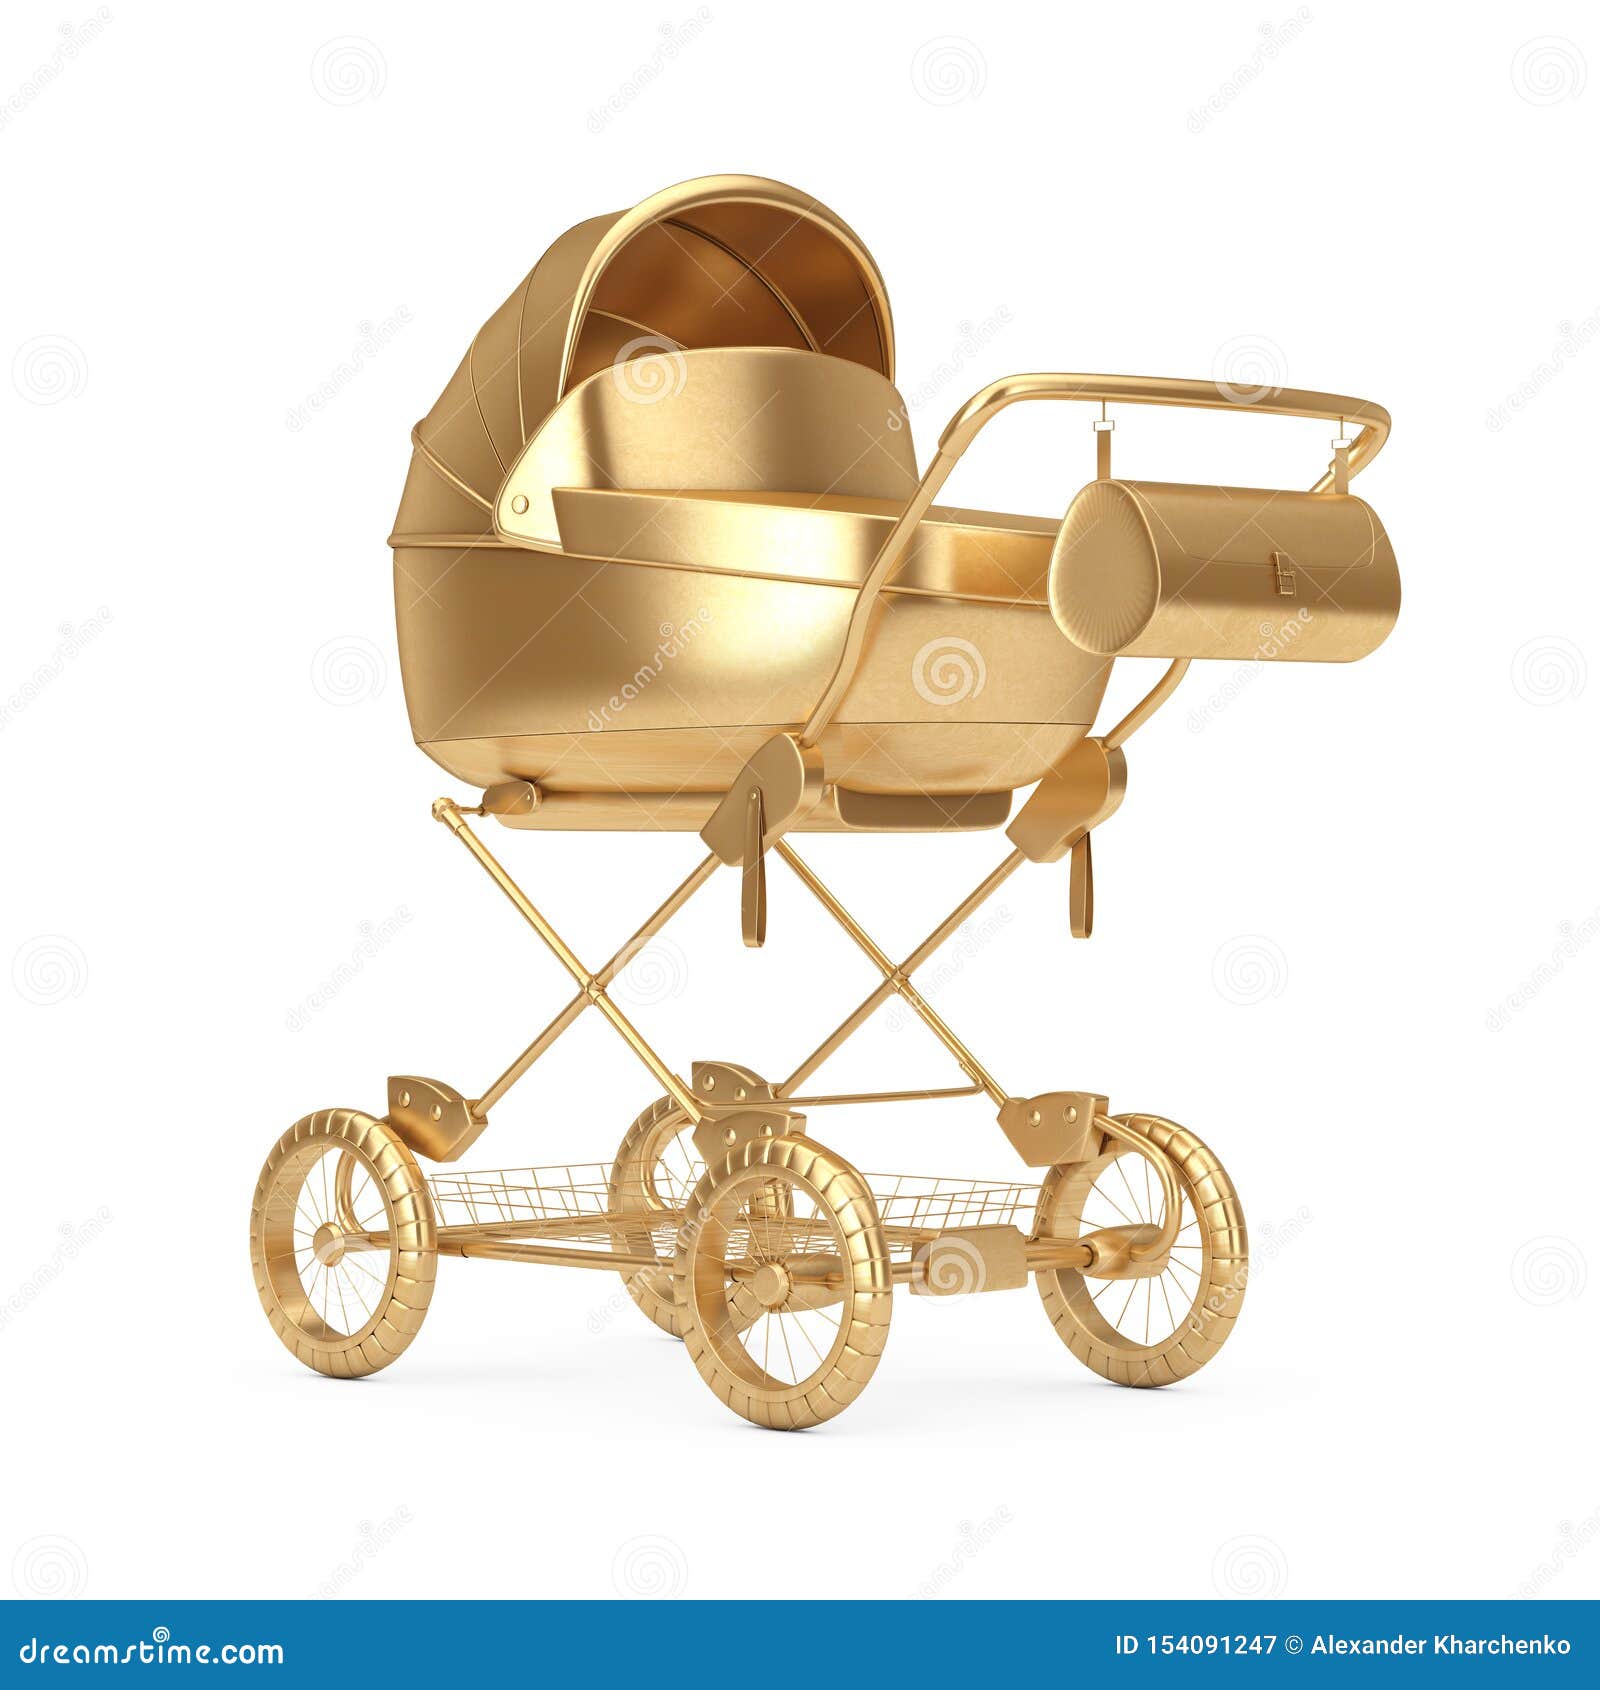 golden baby pram